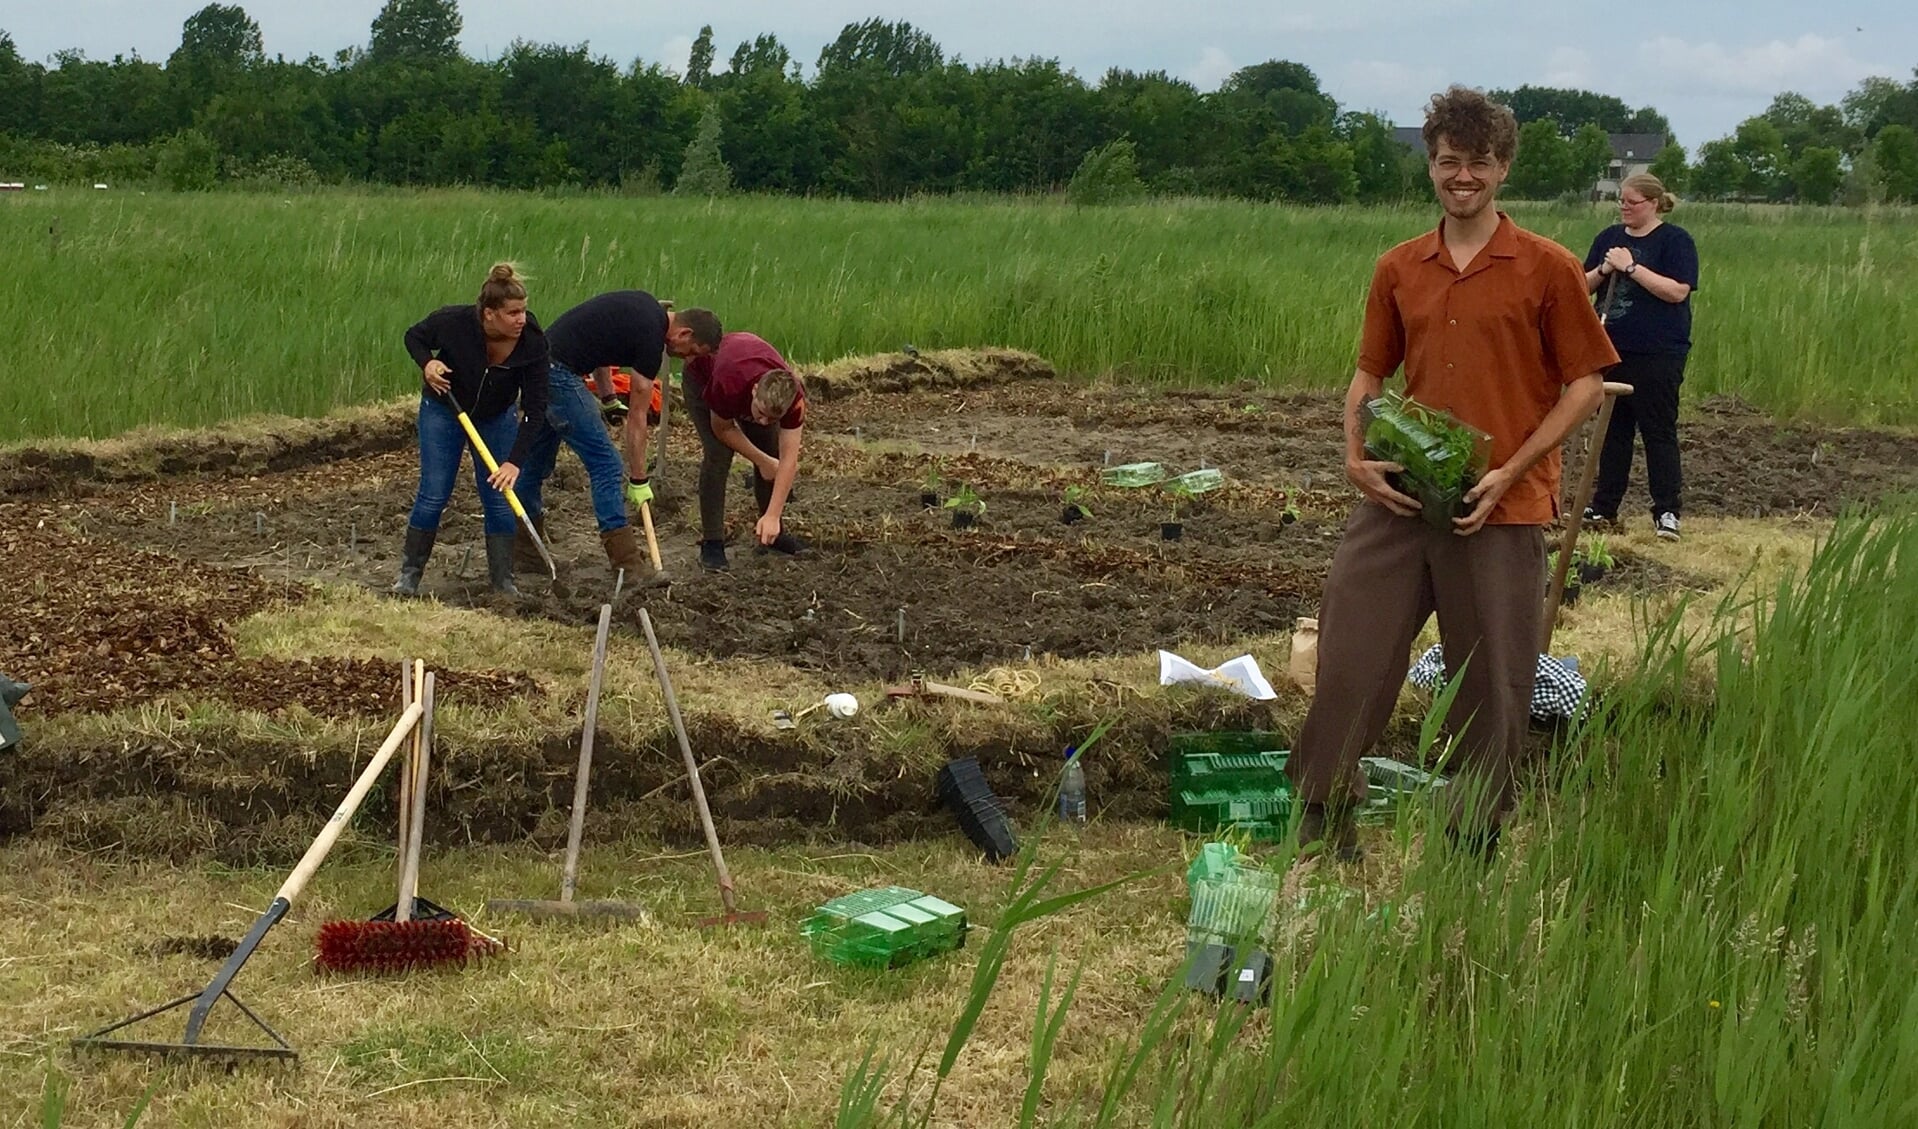 Cliënten van Zorghoeve Kakelbont helpen de proeftuin aanleggen. Vooraan rechts Michael den Boer.